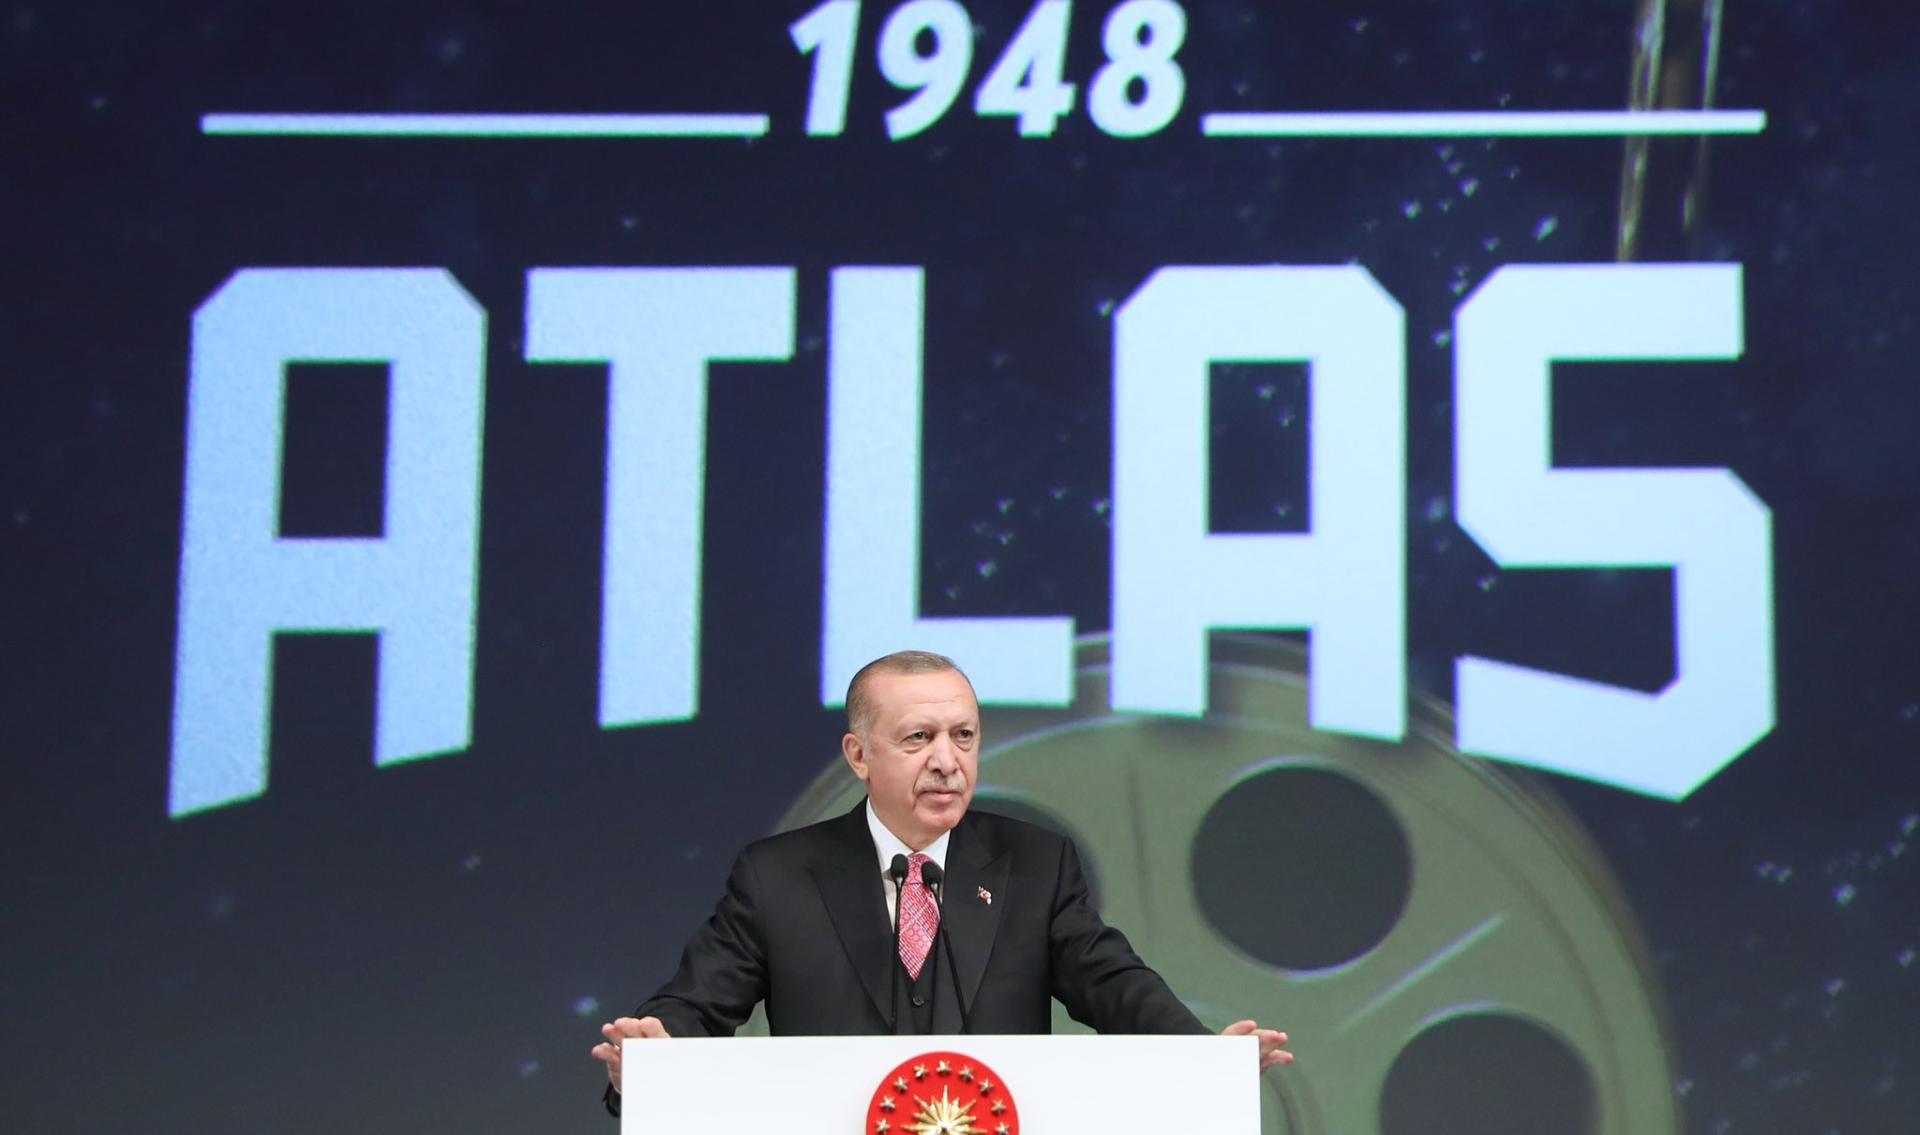 Претседателот Ердоган: Најзначајниот показател дека сме земја чија ѕвезда постепено блеска е бројот на странските туристи